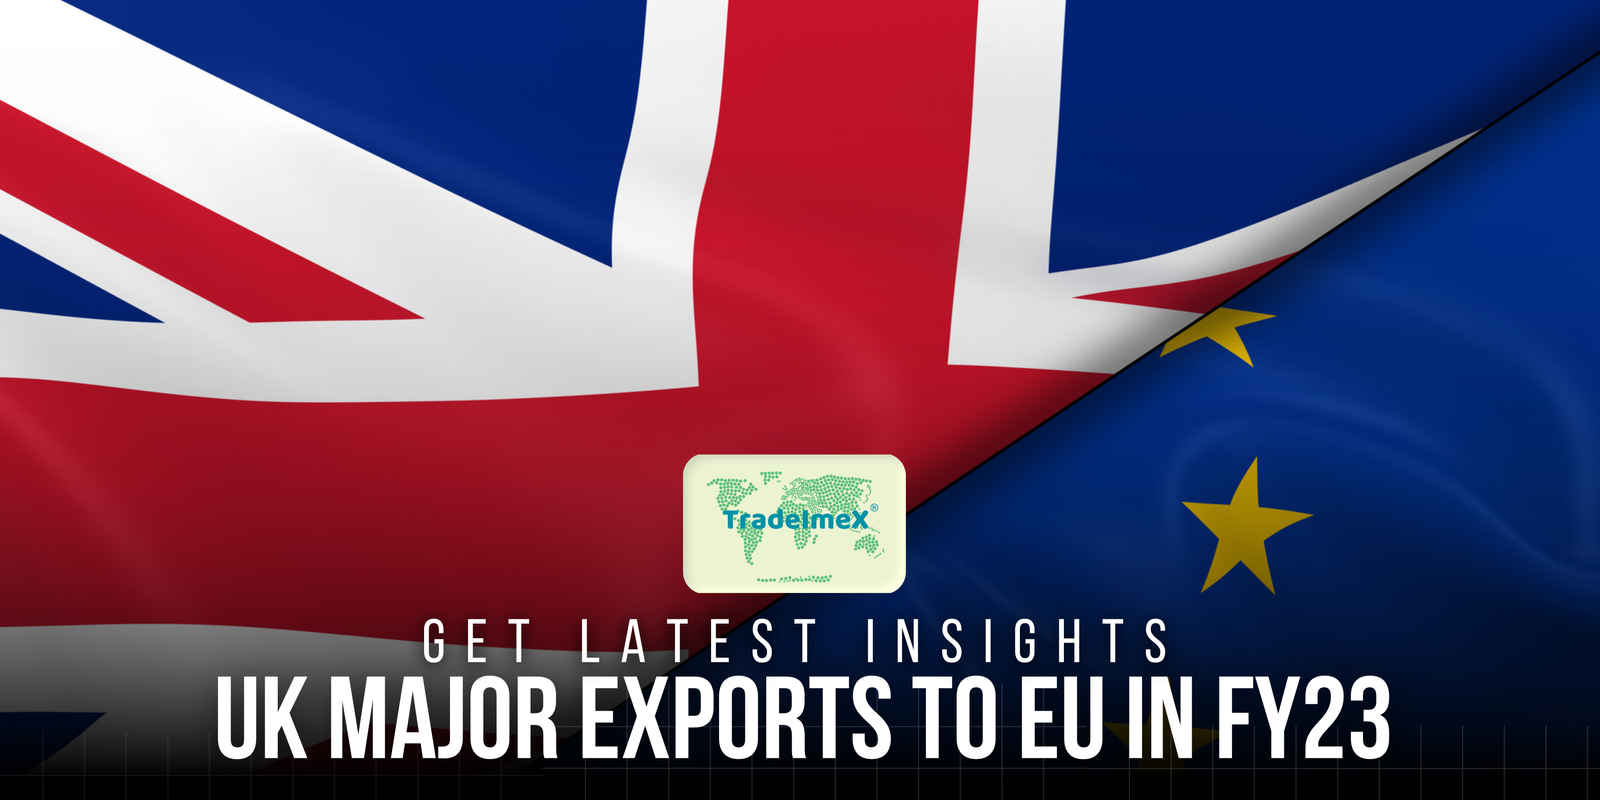 EU exports to UK